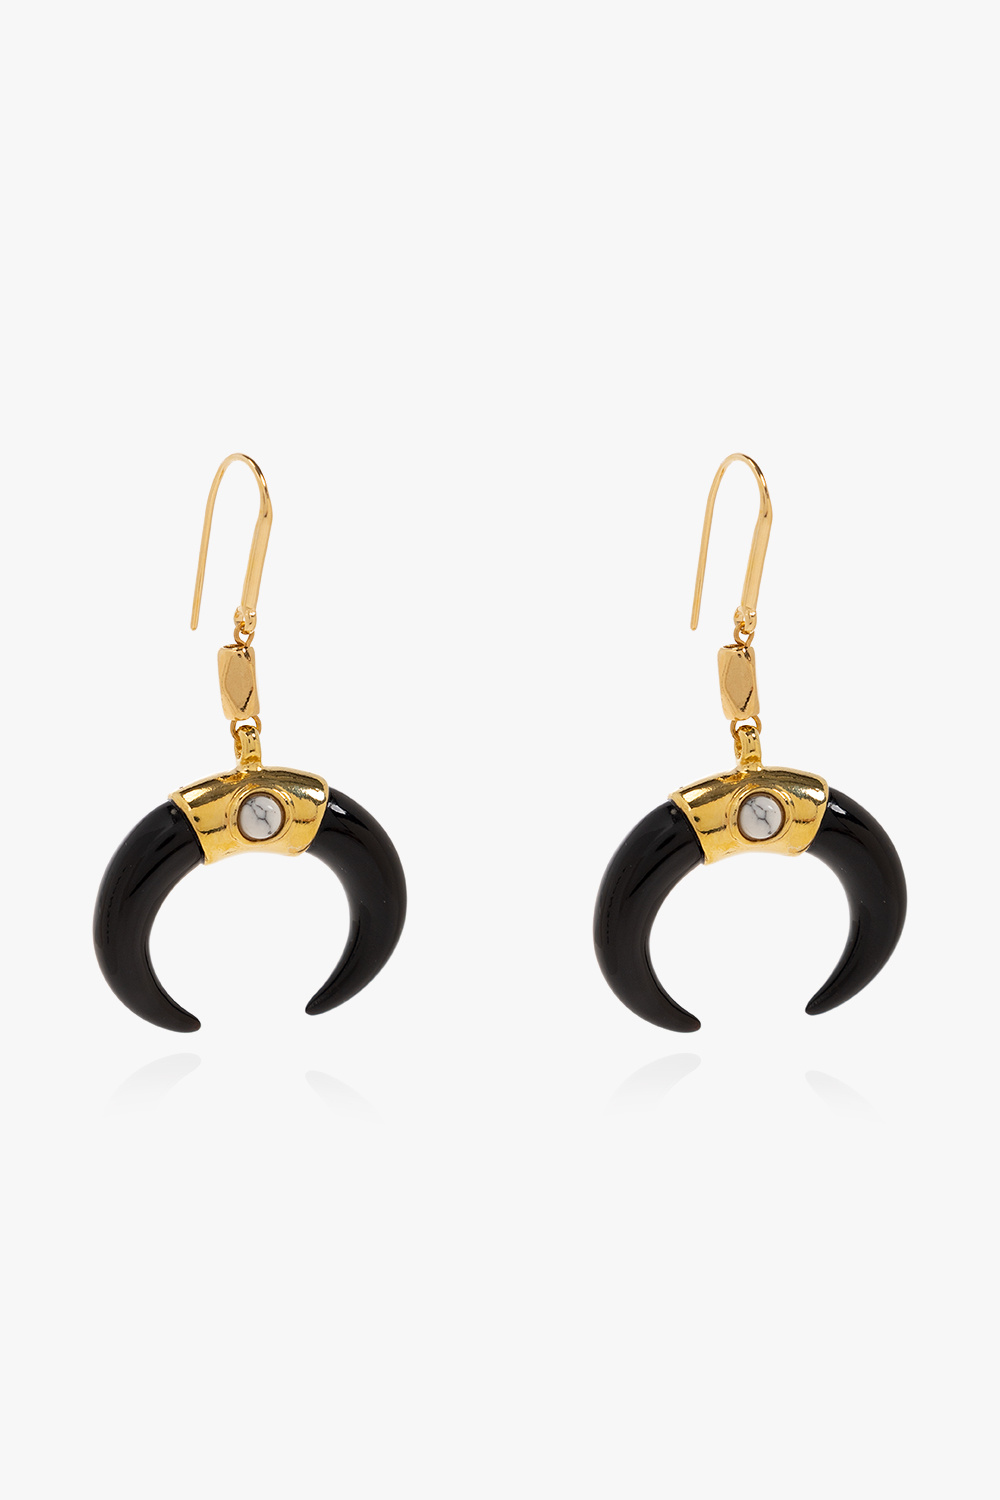 Isabel Marant Buffalo horn earrings